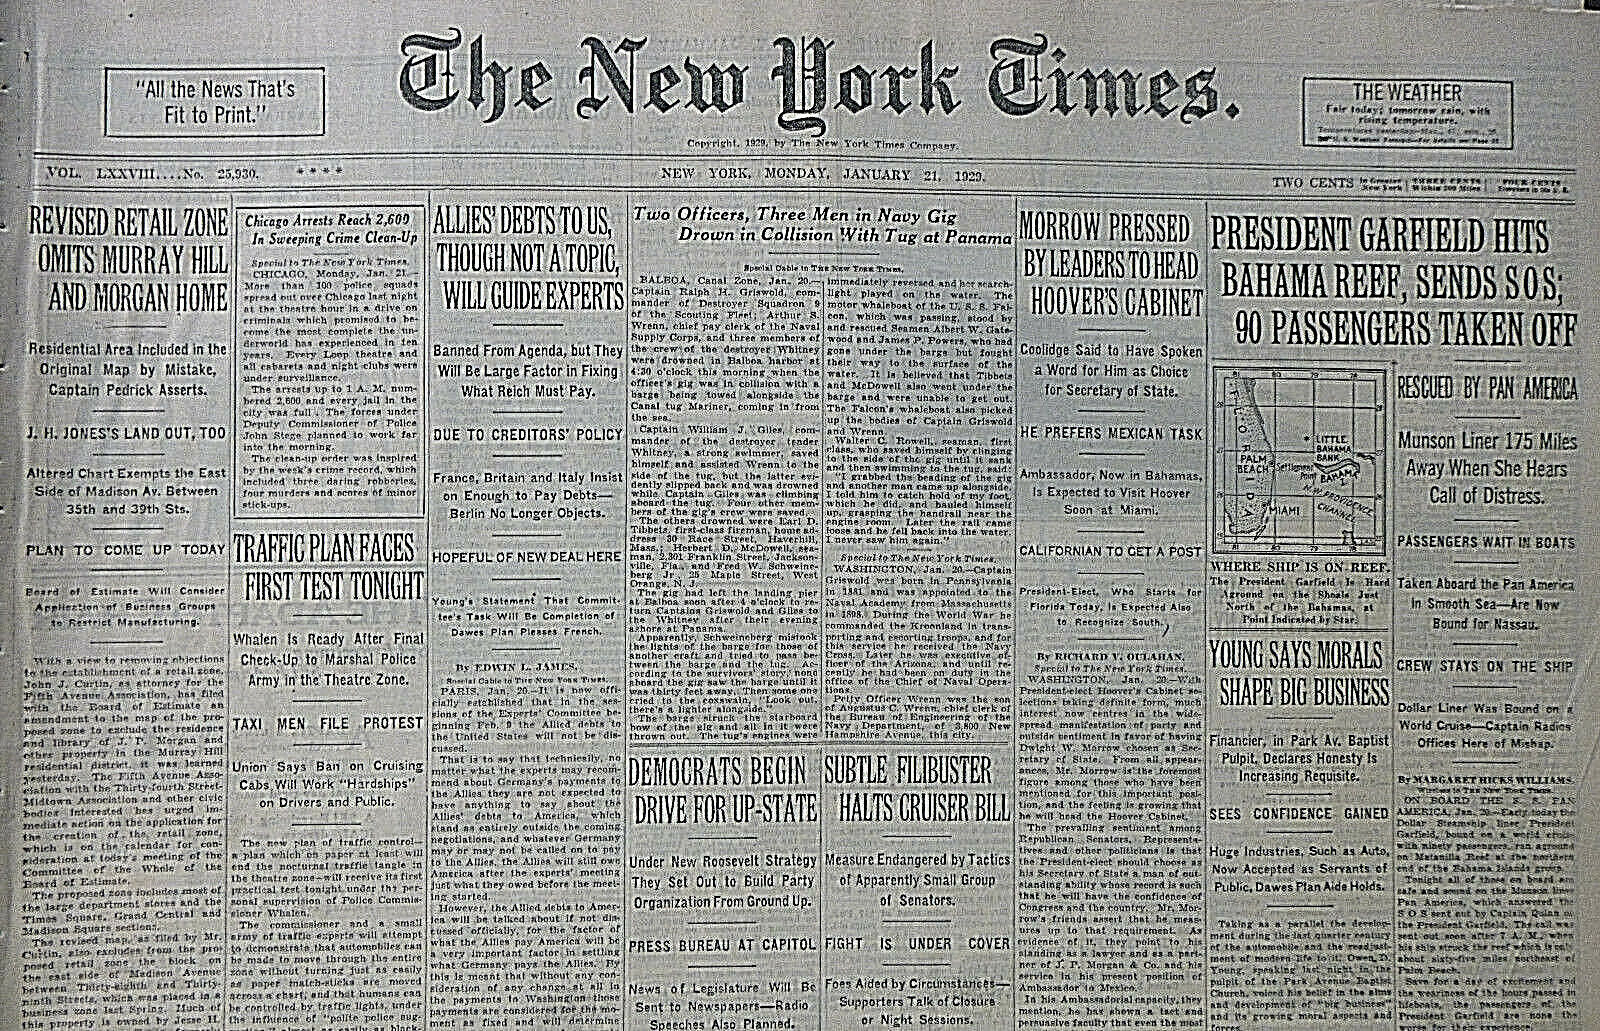 1-1929 January 21 GARFIELD HITS BAHAMA REEF 90 PASSENGERS OFF MORROW NY Times 